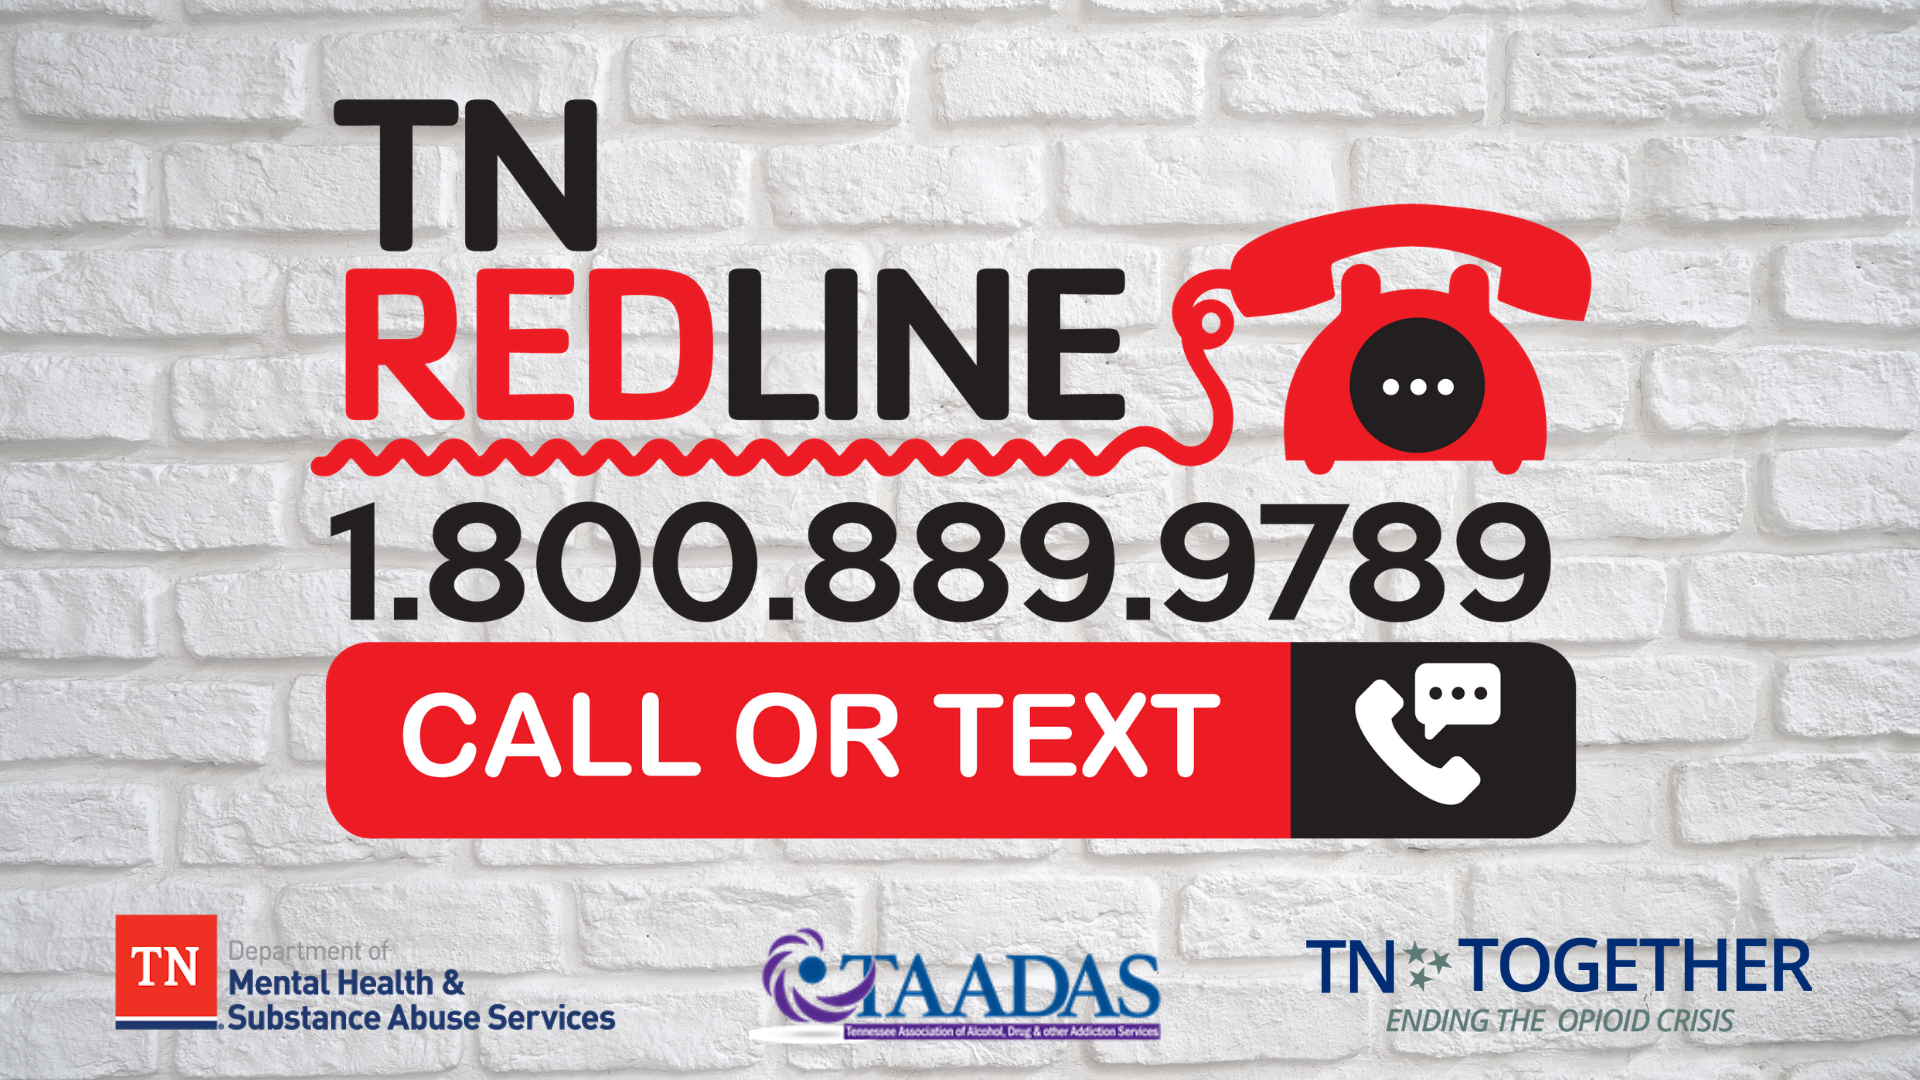 TN Redline number